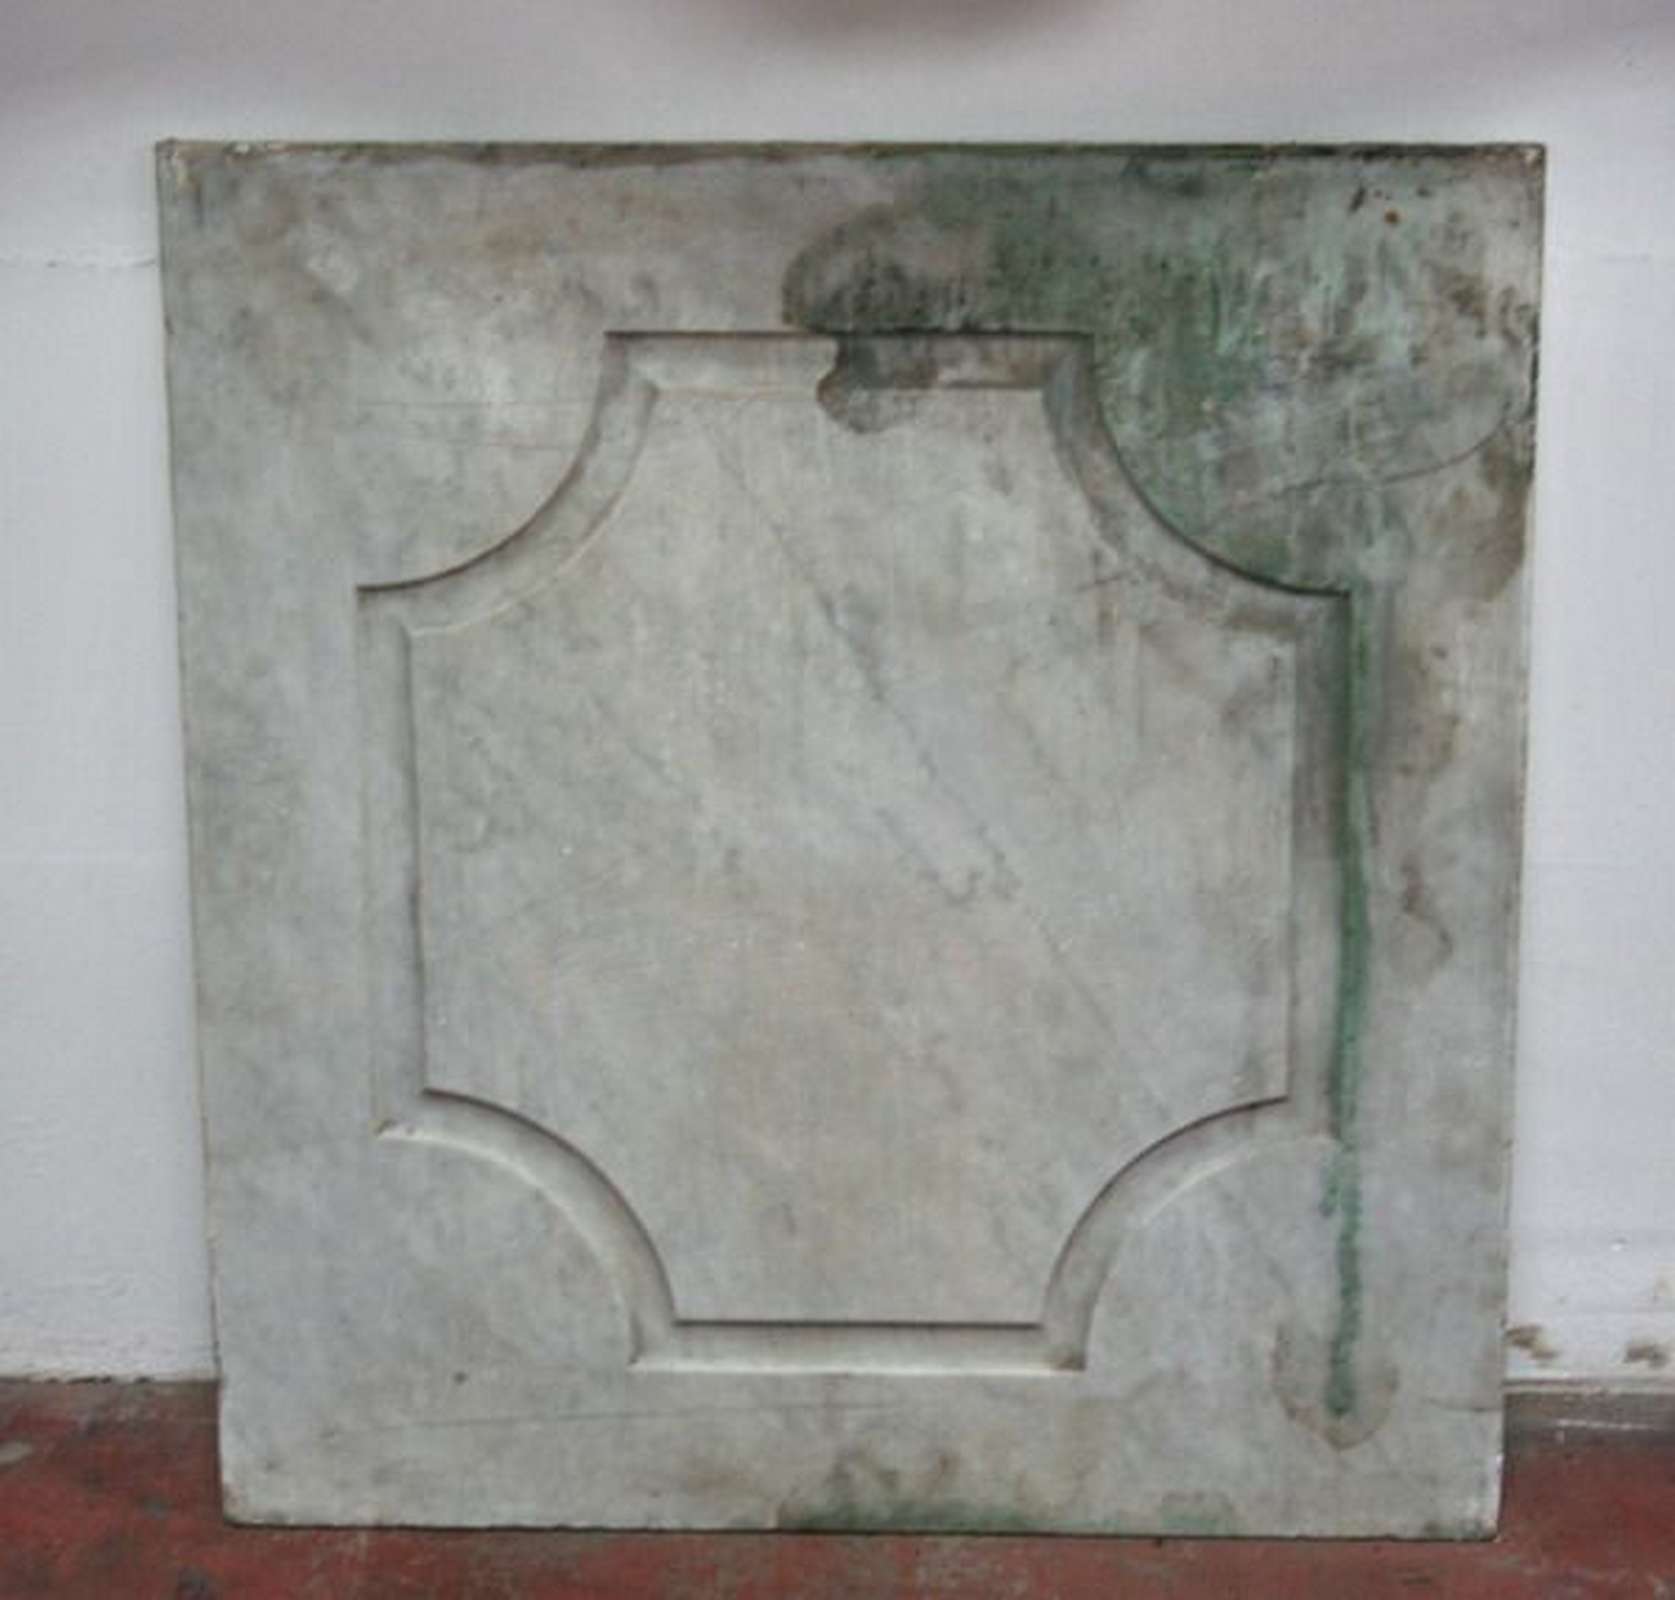 Antico pannello in marmo - Elementi Architettonici - Architettura - Prodotti - Antichità Fiorillo